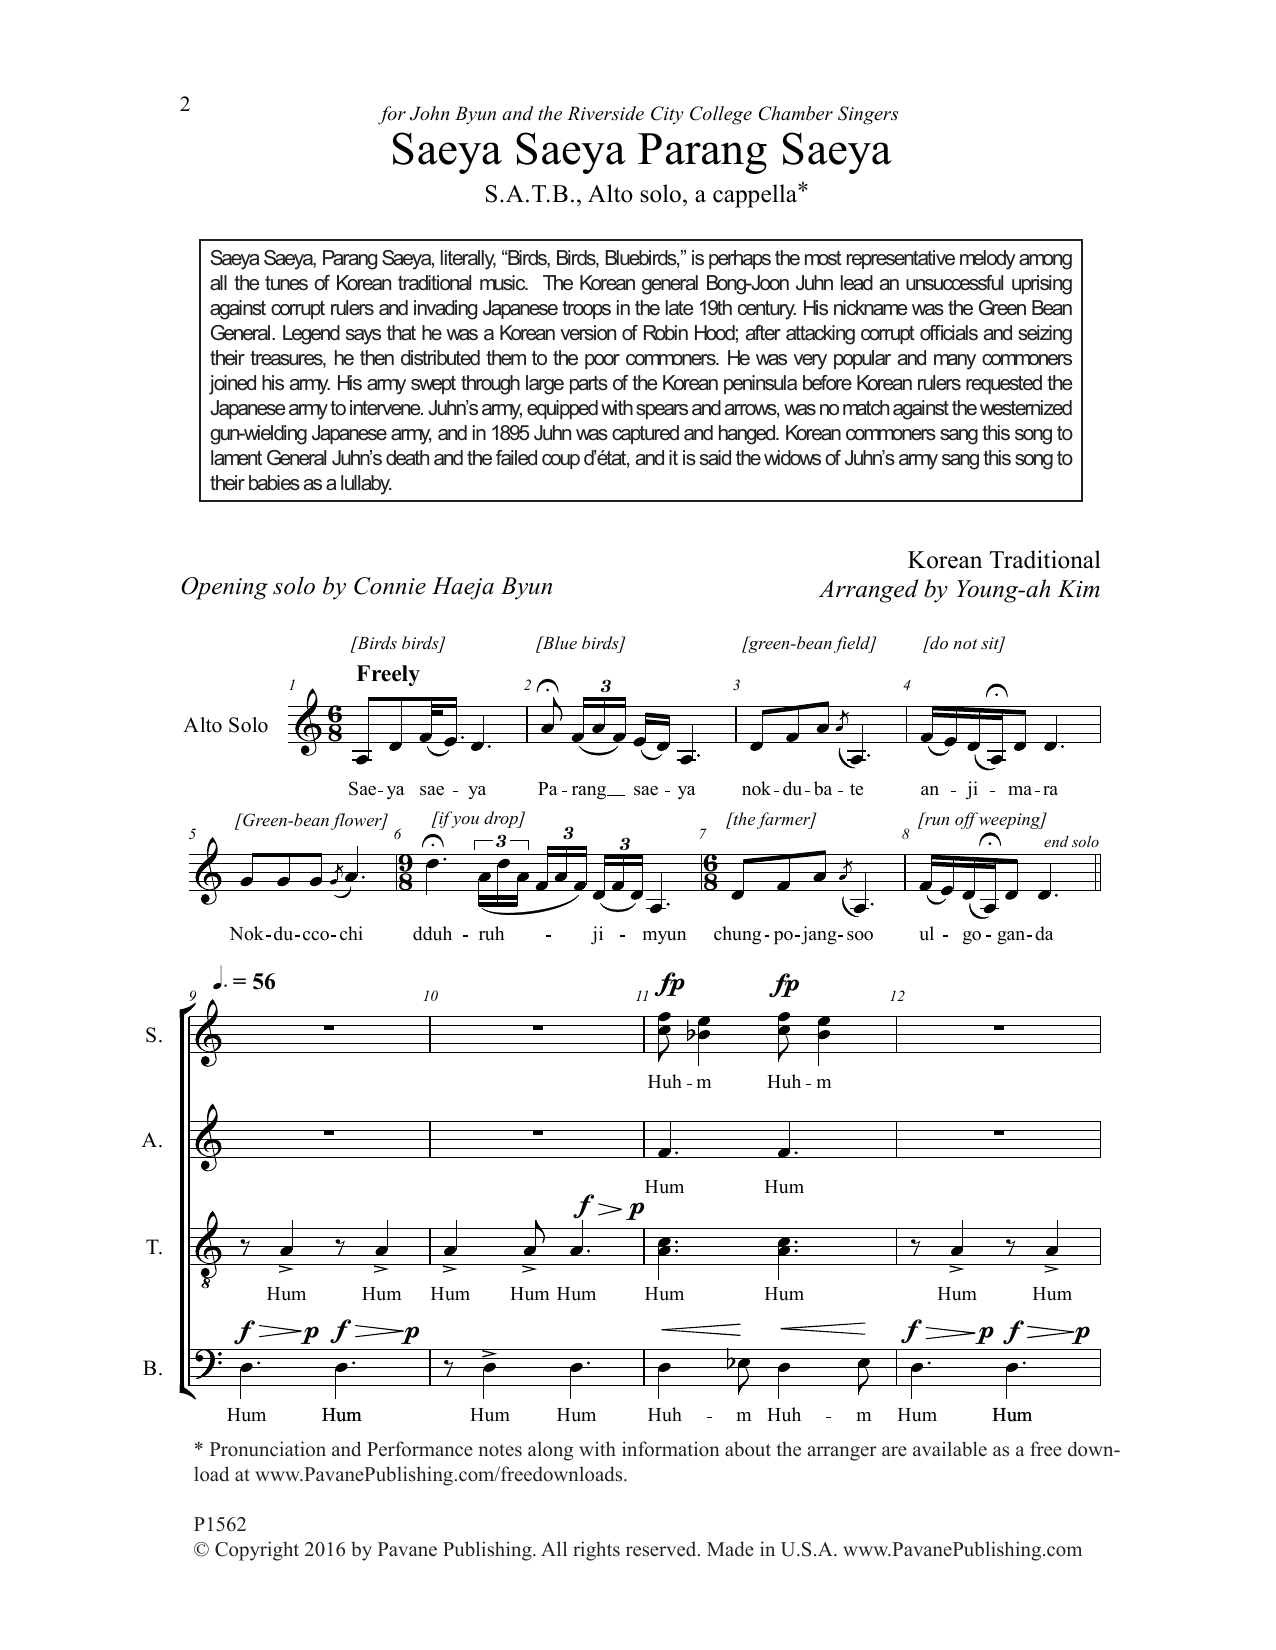 Young-Ah Kim Saeya Saeya Parang Saeya Sheet Music Notes & Chords for Choral - Download or Print PDF